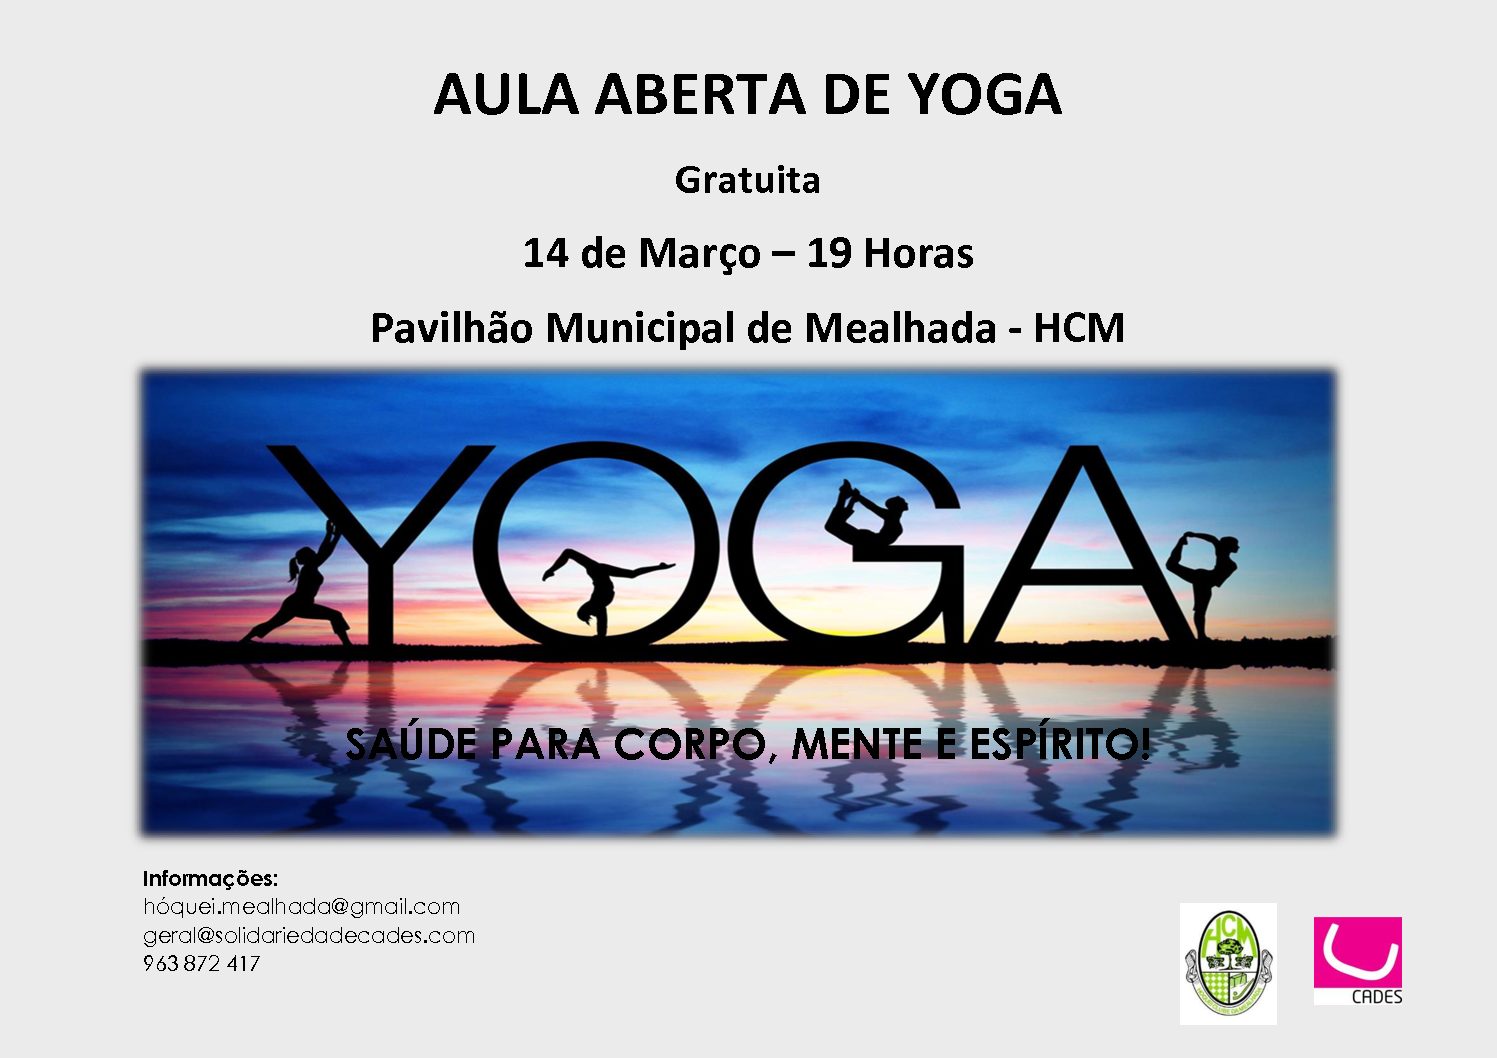 Aula aberta de Yoga no dia 14 de Março no Pavilhão Municipal da Mealhada